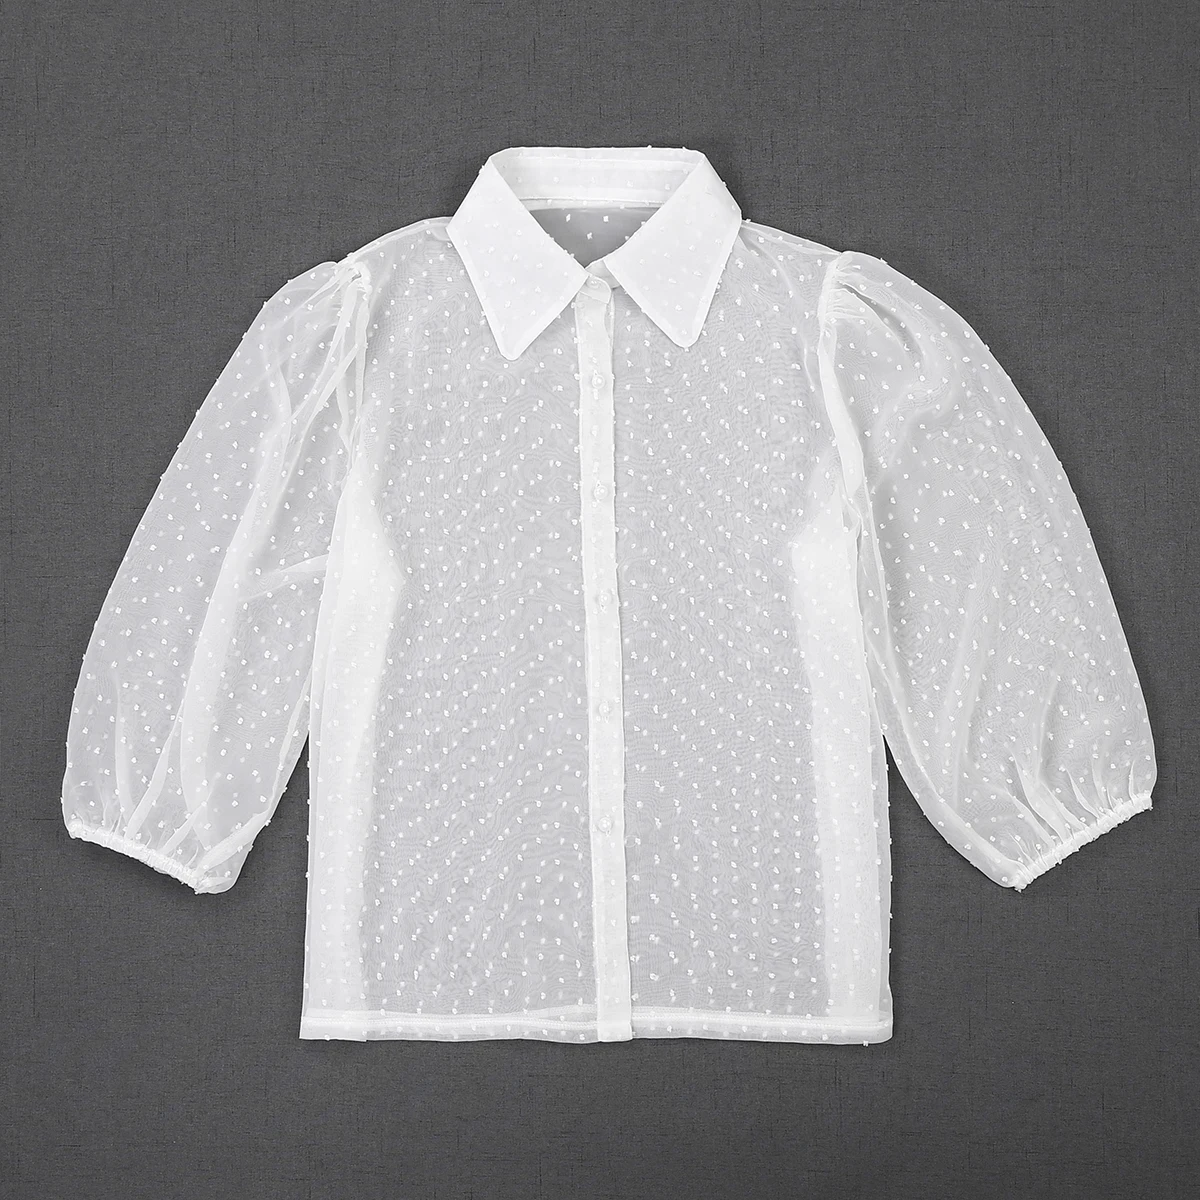 Женская прозрачная сетчатая рыбья блузка в сетку, модная блузка с коротким рукавом и воротником-стойкой, рубашки черного и белого цветов в горошек